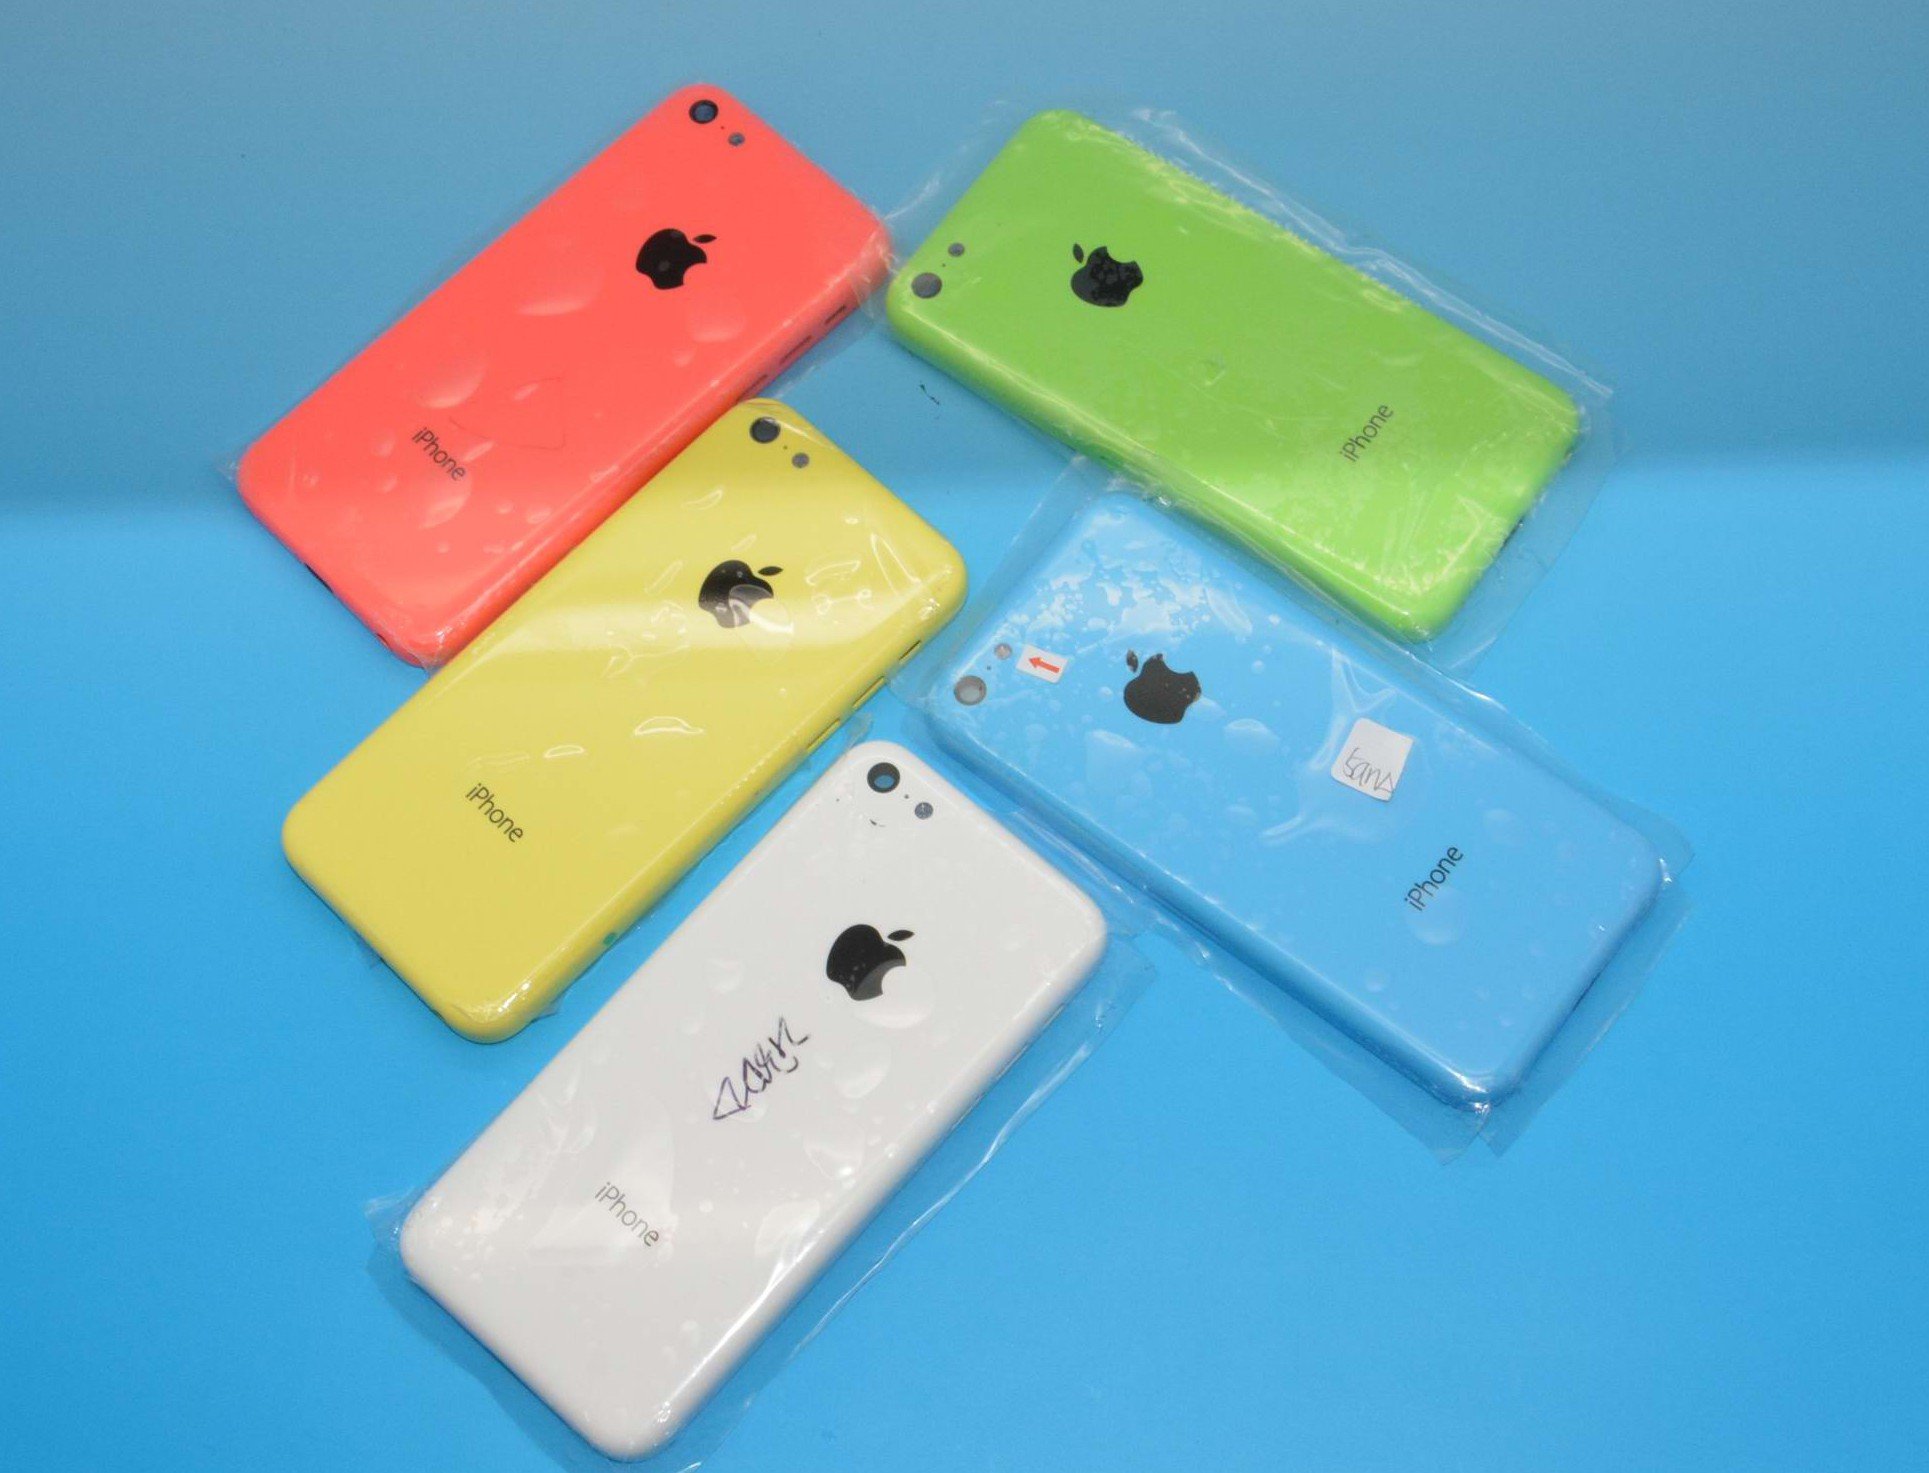 Fotos iPhone 5C: alle Farben, kein schwarz? 7